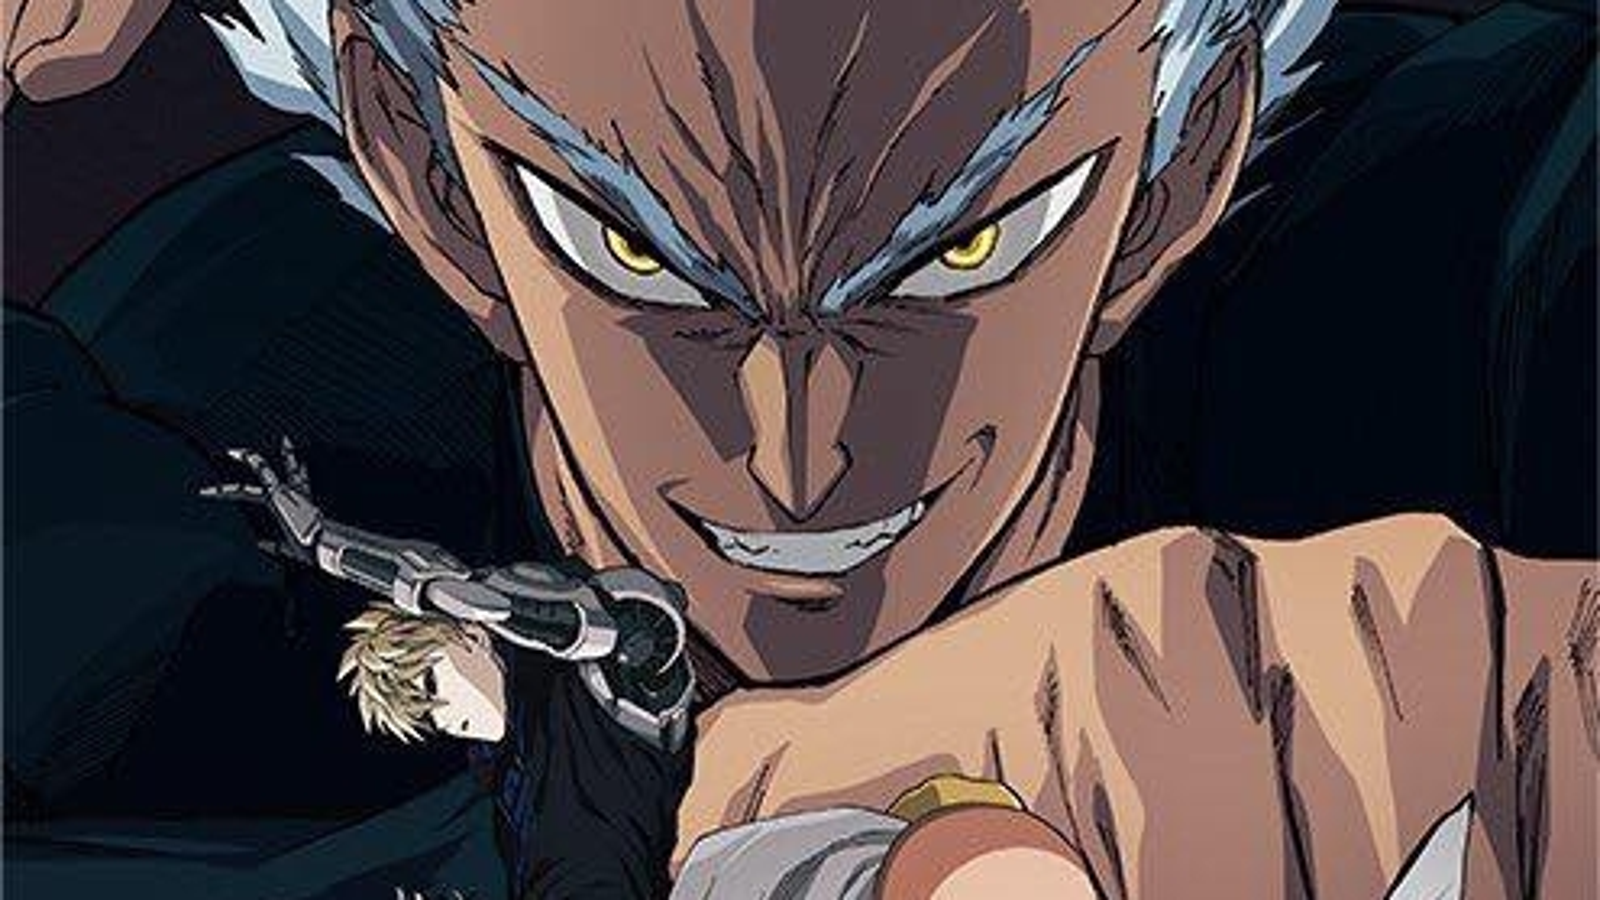 Nova temporada do anime One Punch Man é confirmada para 2019